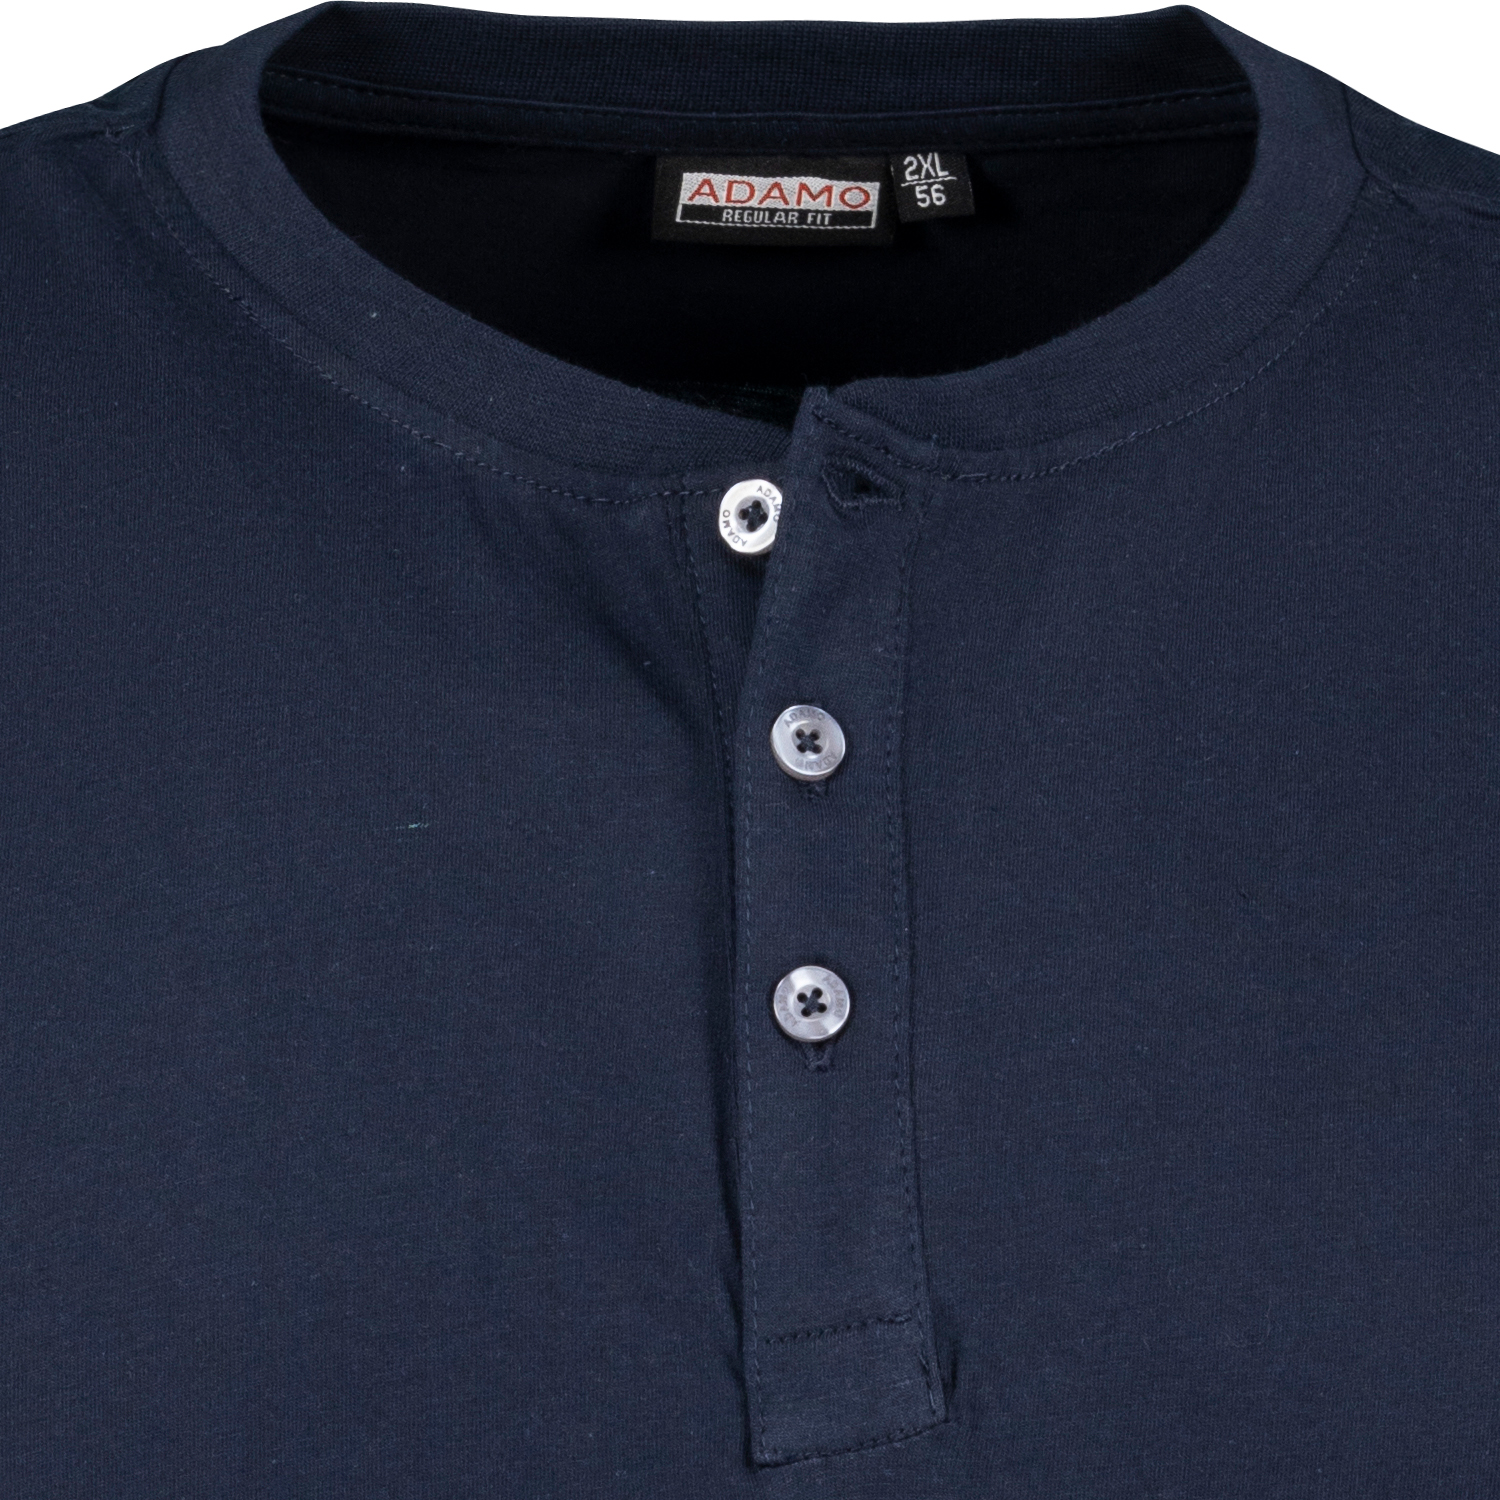 Dunkelblaues kurzarm Shirt Modell Silas von Adamo in großen Größen 2XL-10XL REGULAR FIT 